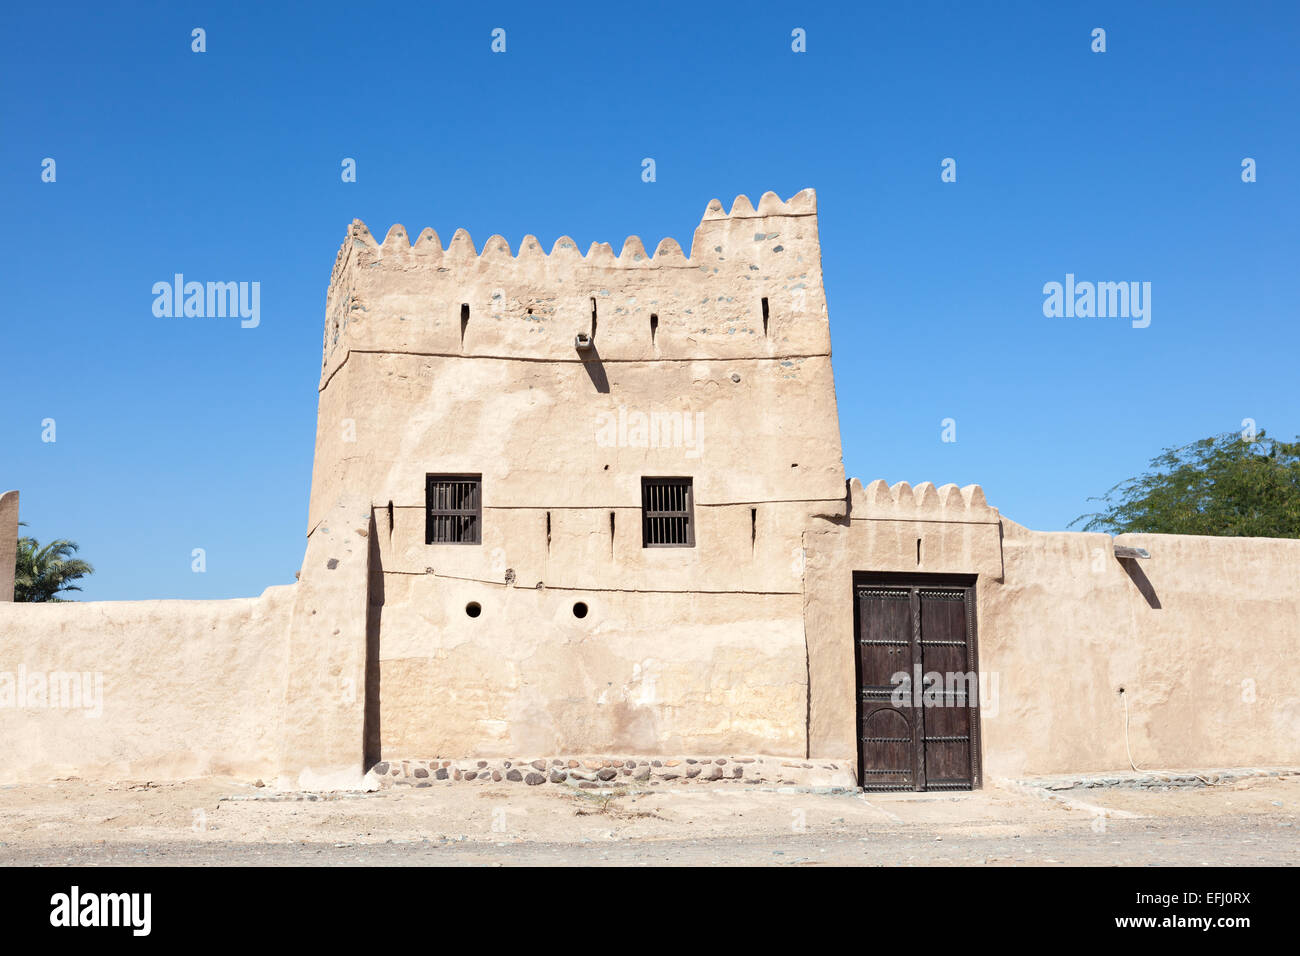 Heritage Village in Fujairah, United Arab Emirates Stock Photo